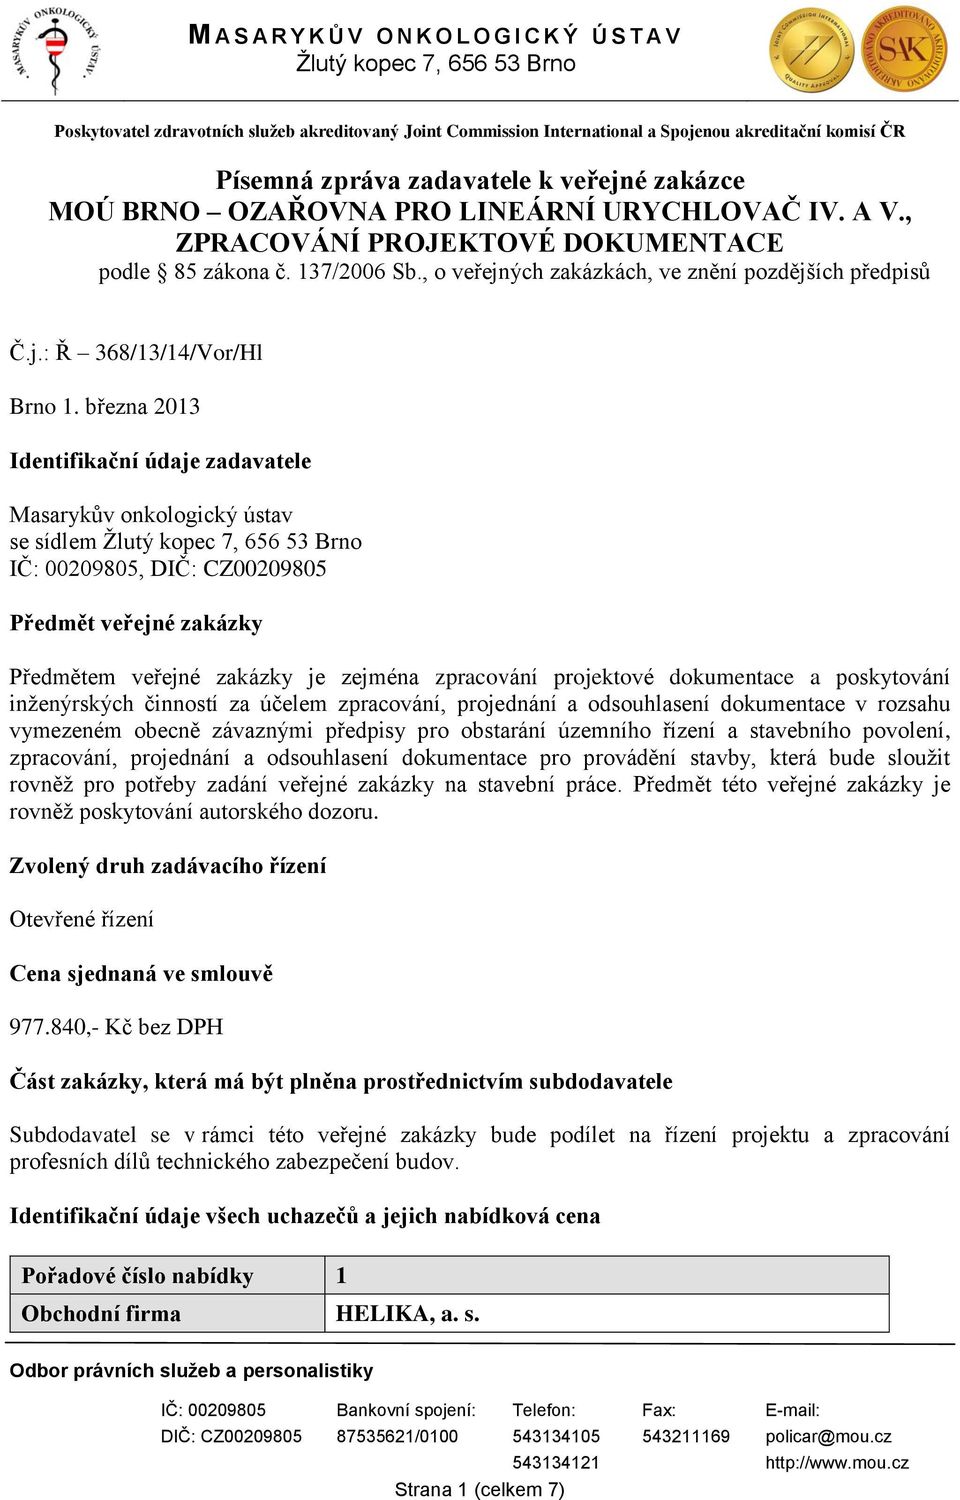 března 2013 Identifikační údaje zadavatele Masarykův onkologický ústav se sídlem Ţlutý kopec 7, 656 53 Brno IČ: 00209805, DIČ: CZ00209805 Předmět veřejné zakázky Předmětem veřejné zakázky je zejména